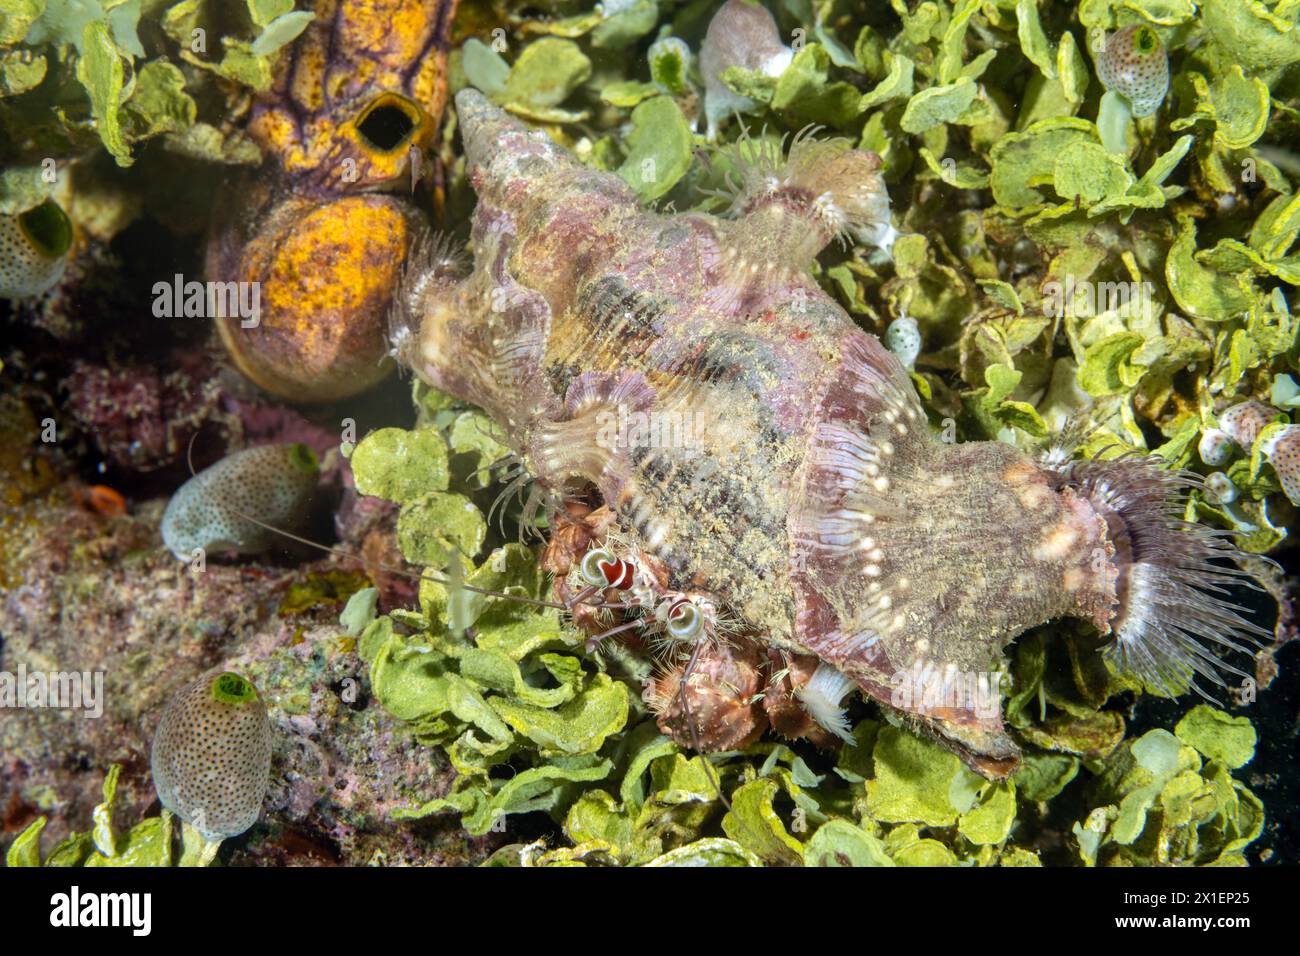 Einsiedlerkrebse, Dardanus pedunculatus, bedecken ihre Muschel mit kleinen Seeanemonen, um sie zu tarnen und zu schützen. Raja Ampat Indonesien. Stockfoto